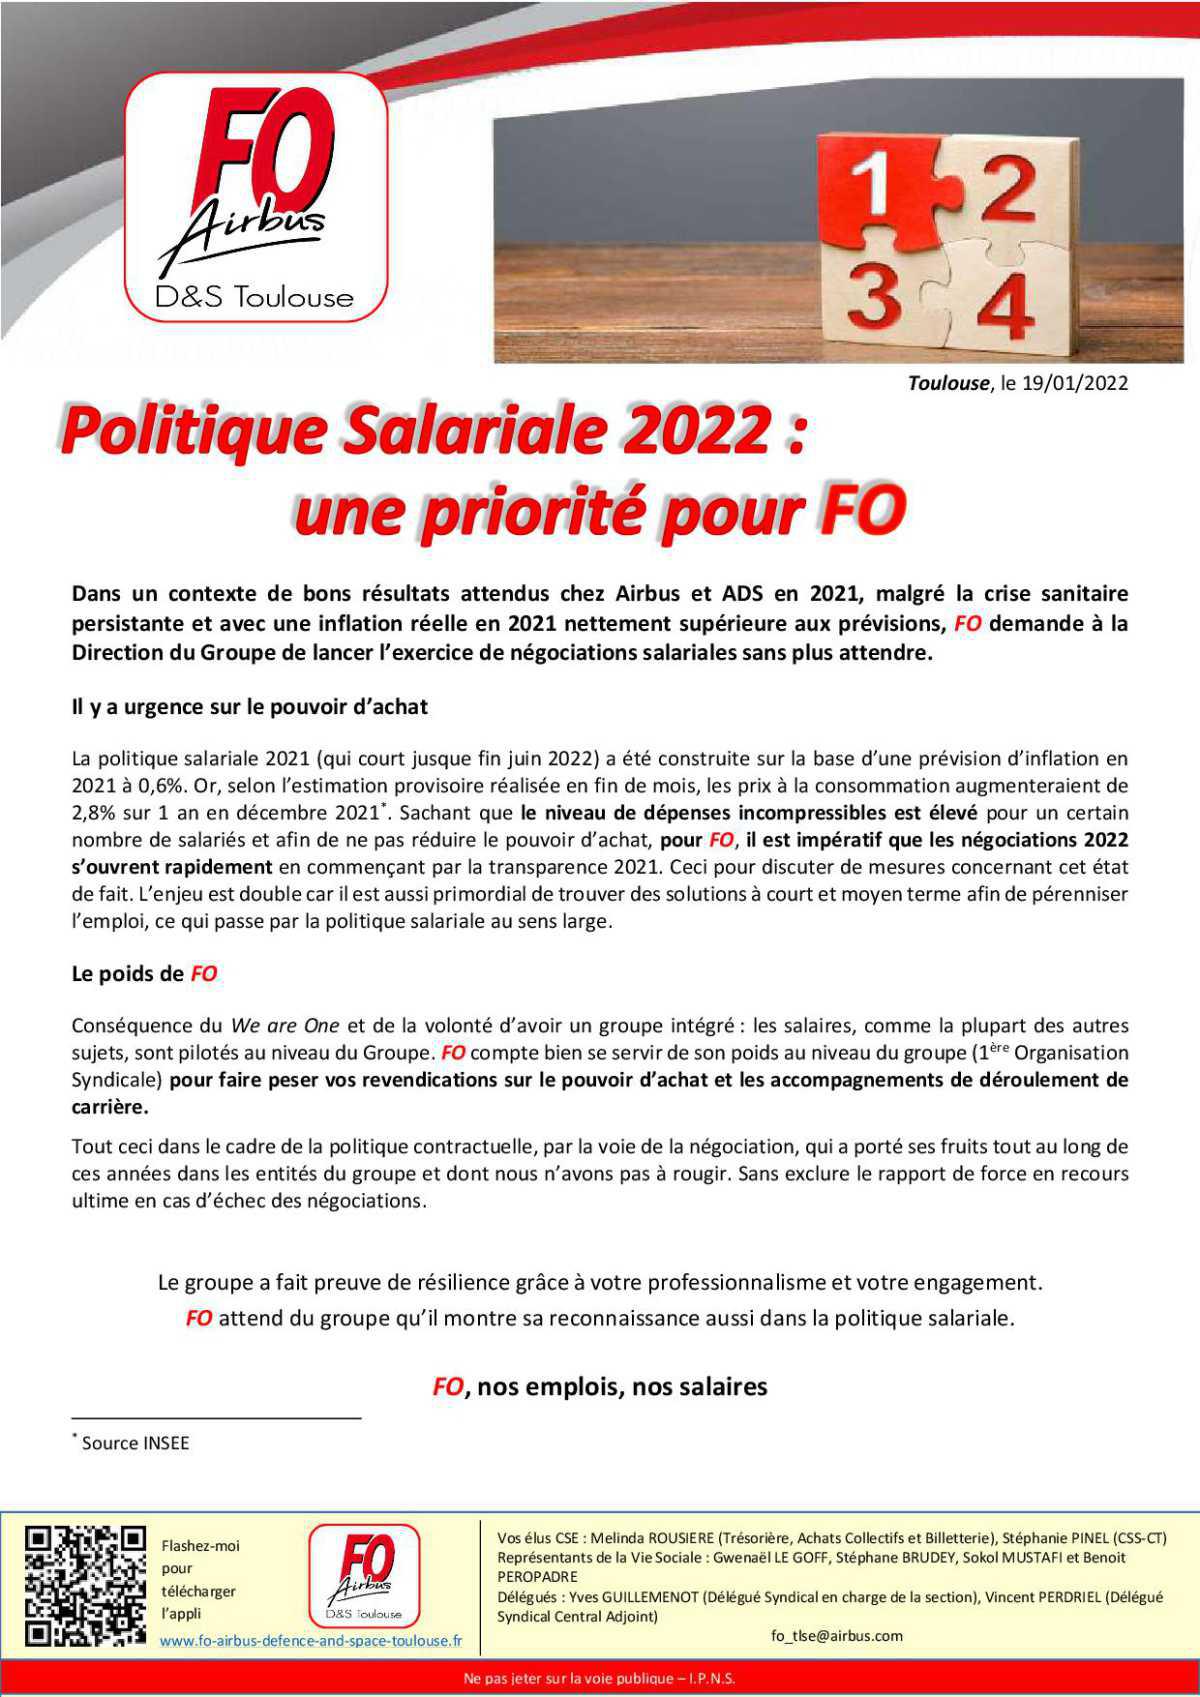 Politique Salariale 2022: une priorité pour FO